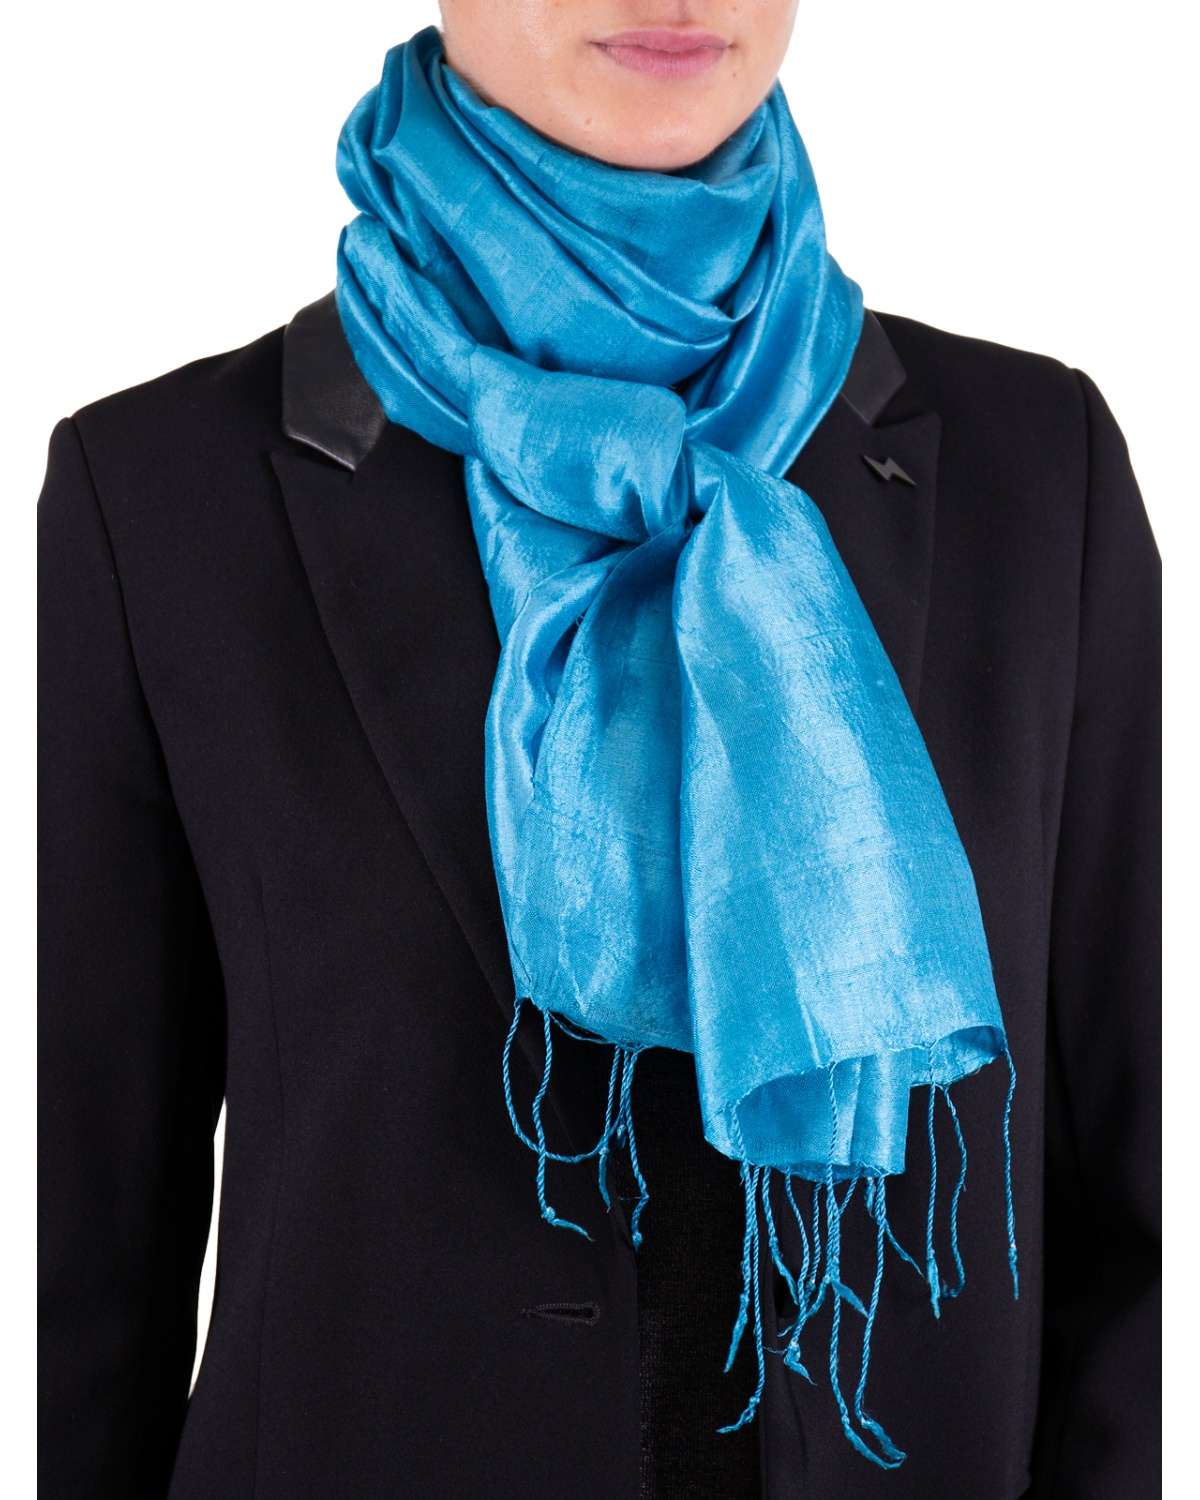 Foulard soie pour homme : vaste choix de foulards homme en 100% soie